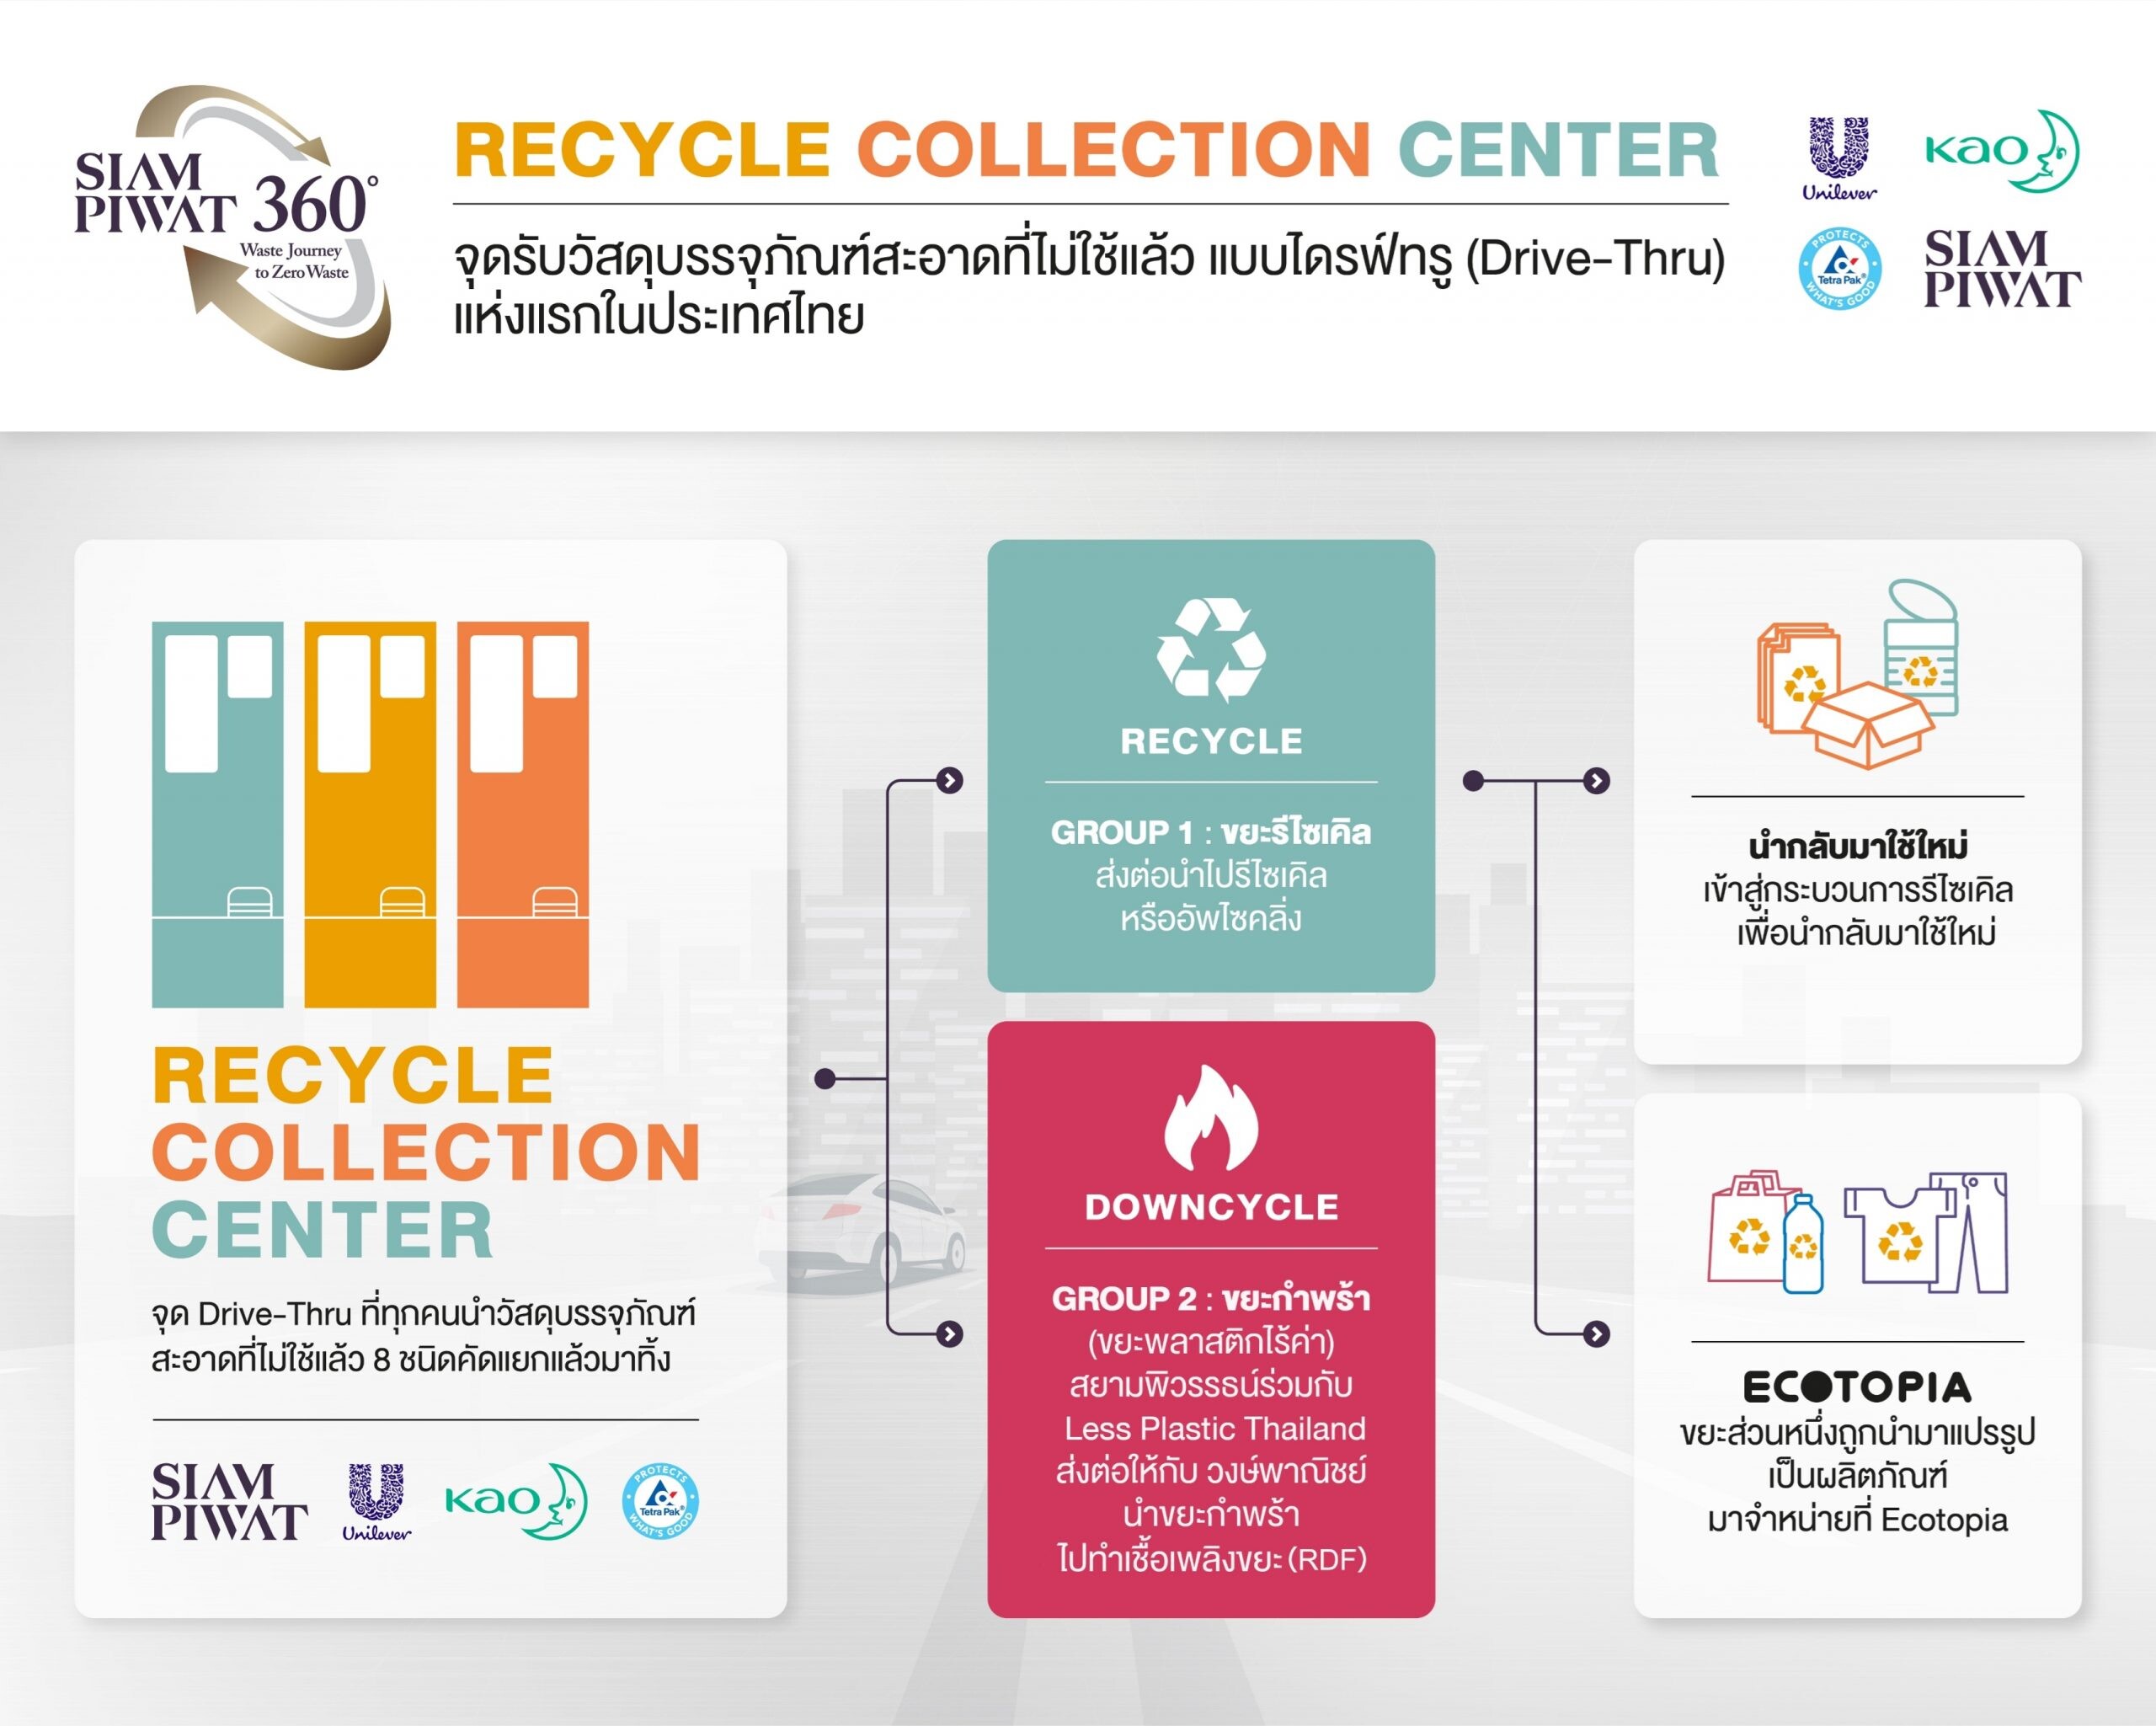 สยามพิวรรธน์จับมือพันธมิตร เปิดให้บริการ Recycle Collection Center แบบ Drive-Thru แห่งแรกในประเทศไทย